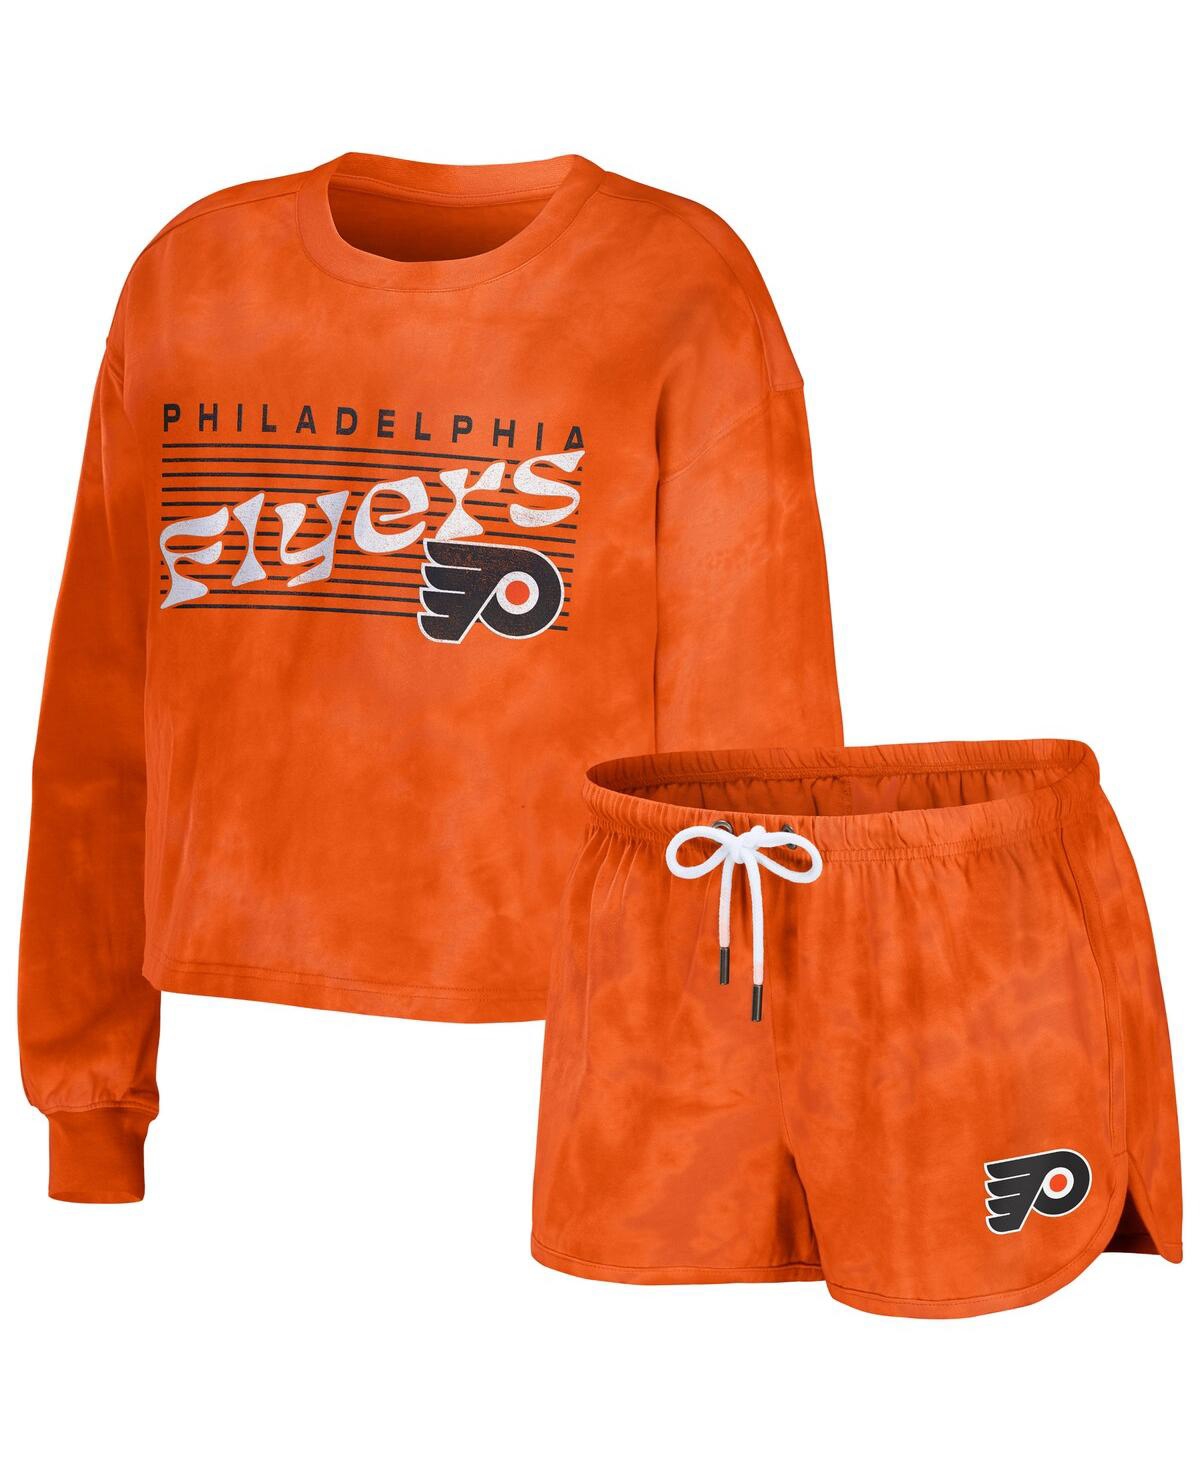 Women's Wear by Erin Andrews Orange Philadelphia Flyers Tie-Dye Cropped Pullover Sweatshirt and Shorts Lounge Set - Orange